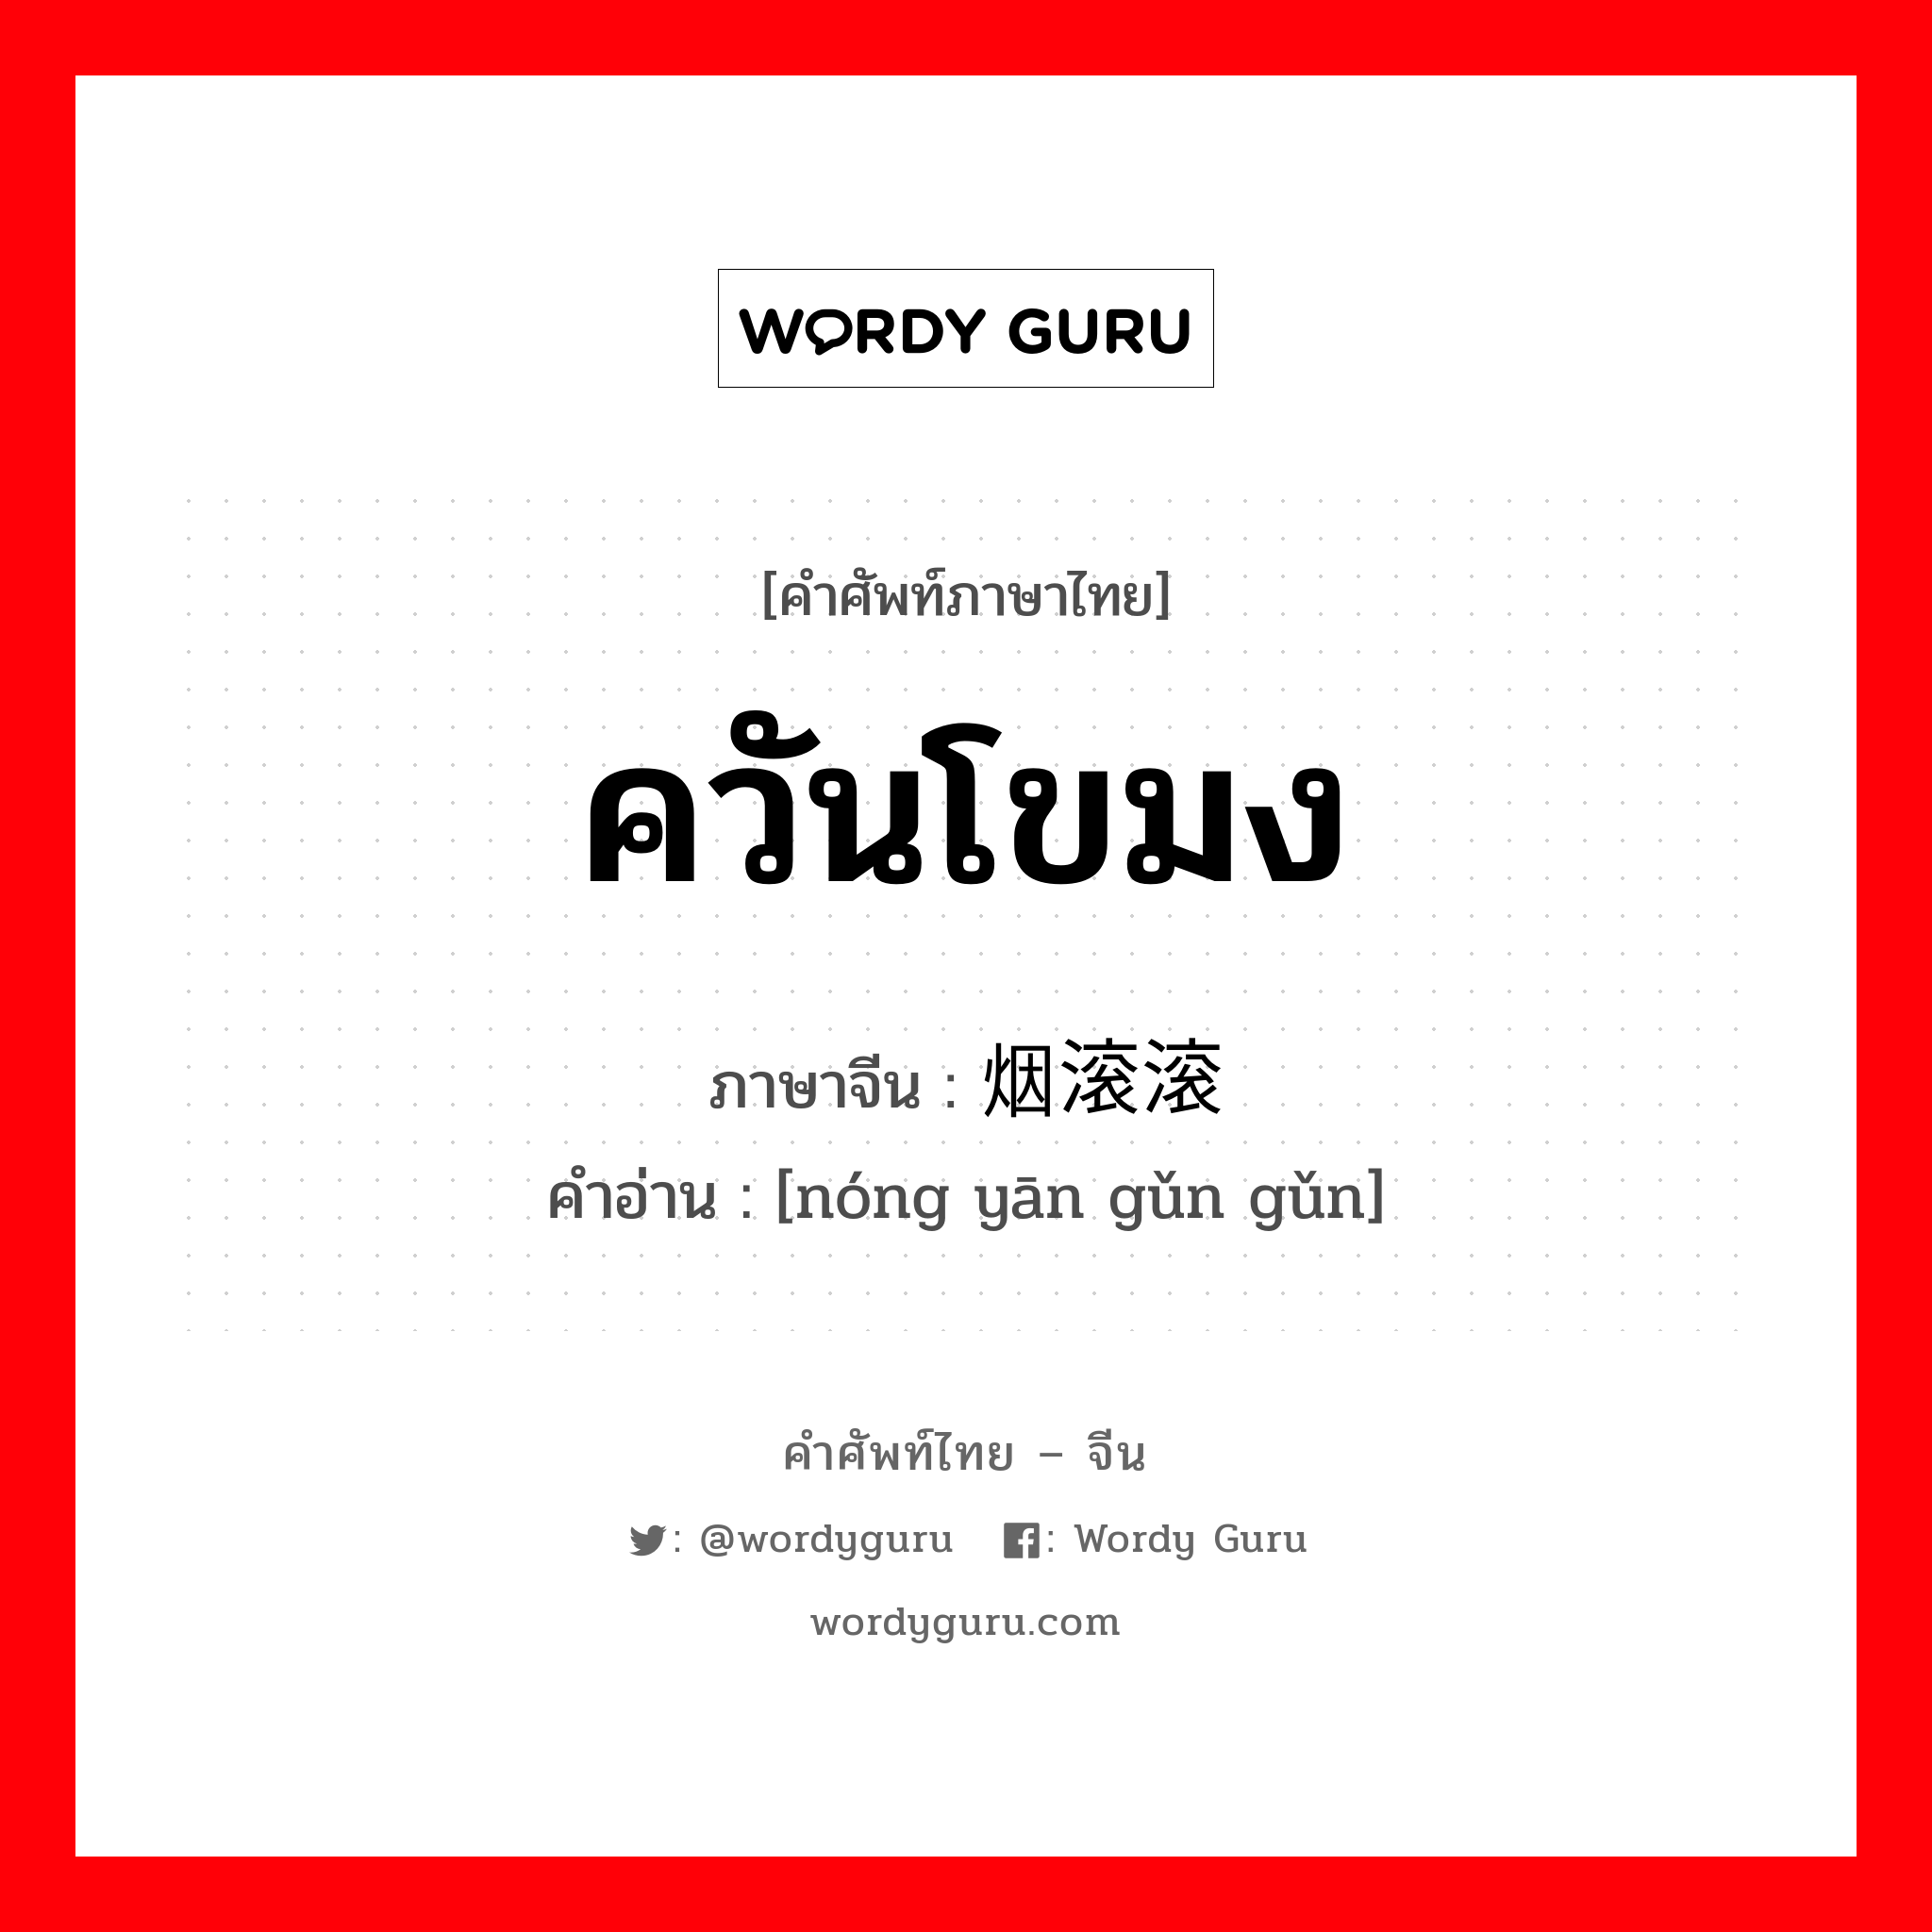 ควันโขมง ภาษาจีนคืออะไร, คำศัพท์ภาษาไทย - จีน ควันโขมง ภาษาจีน 浓烟滚滚 คำอ่าน [nóng yān gǔn gǔn]